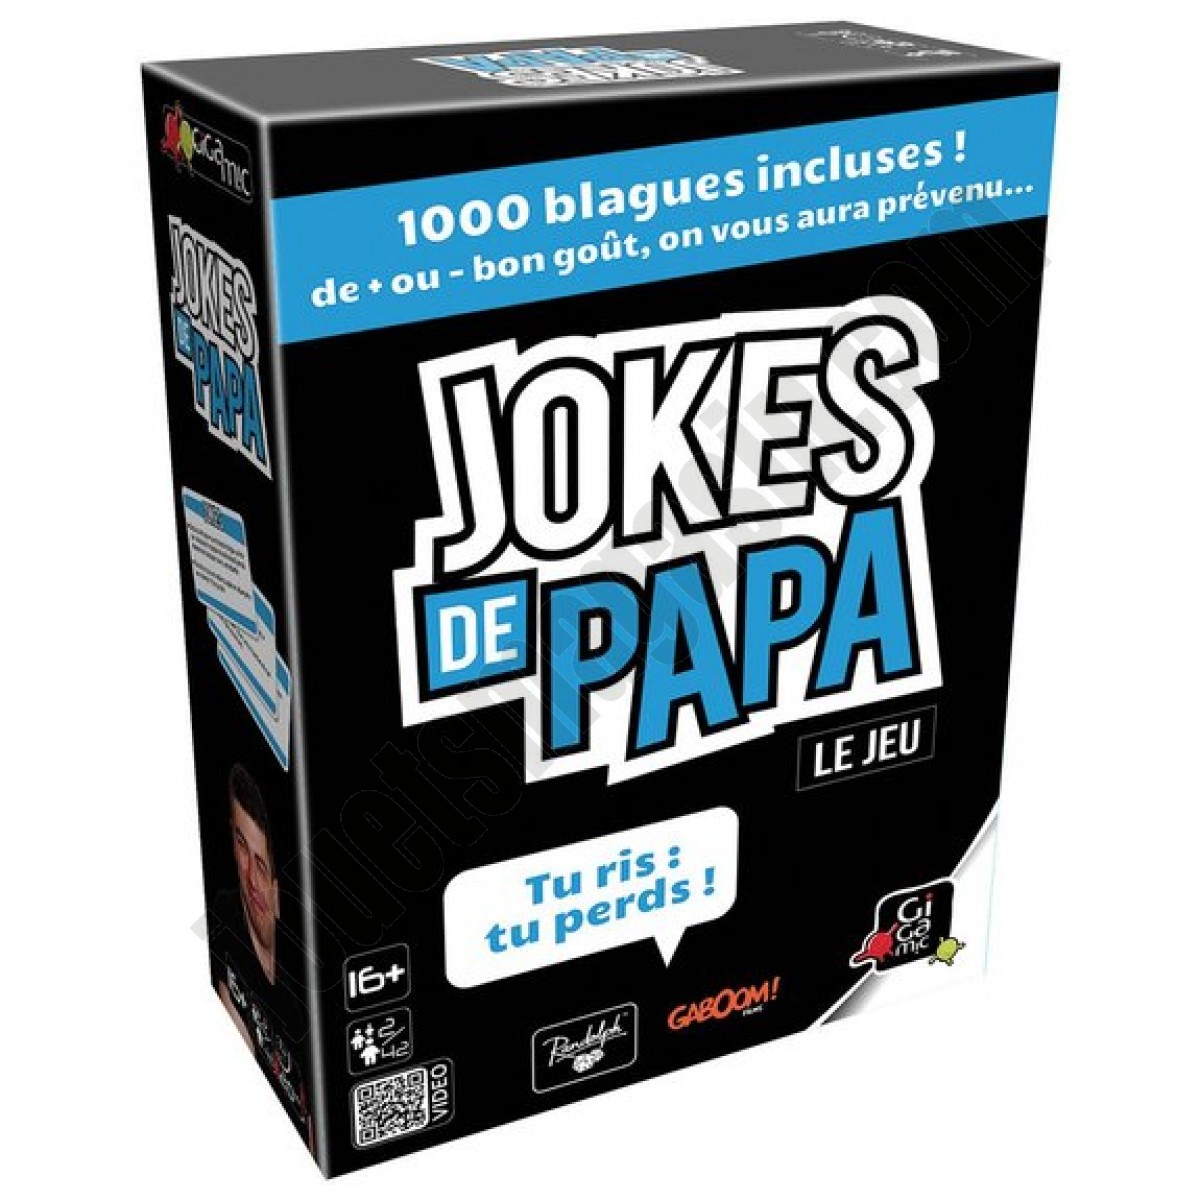 Jokes de papa ◆◆◆ Nouveau - Jokes de papa ◆◆◆ Nouveau